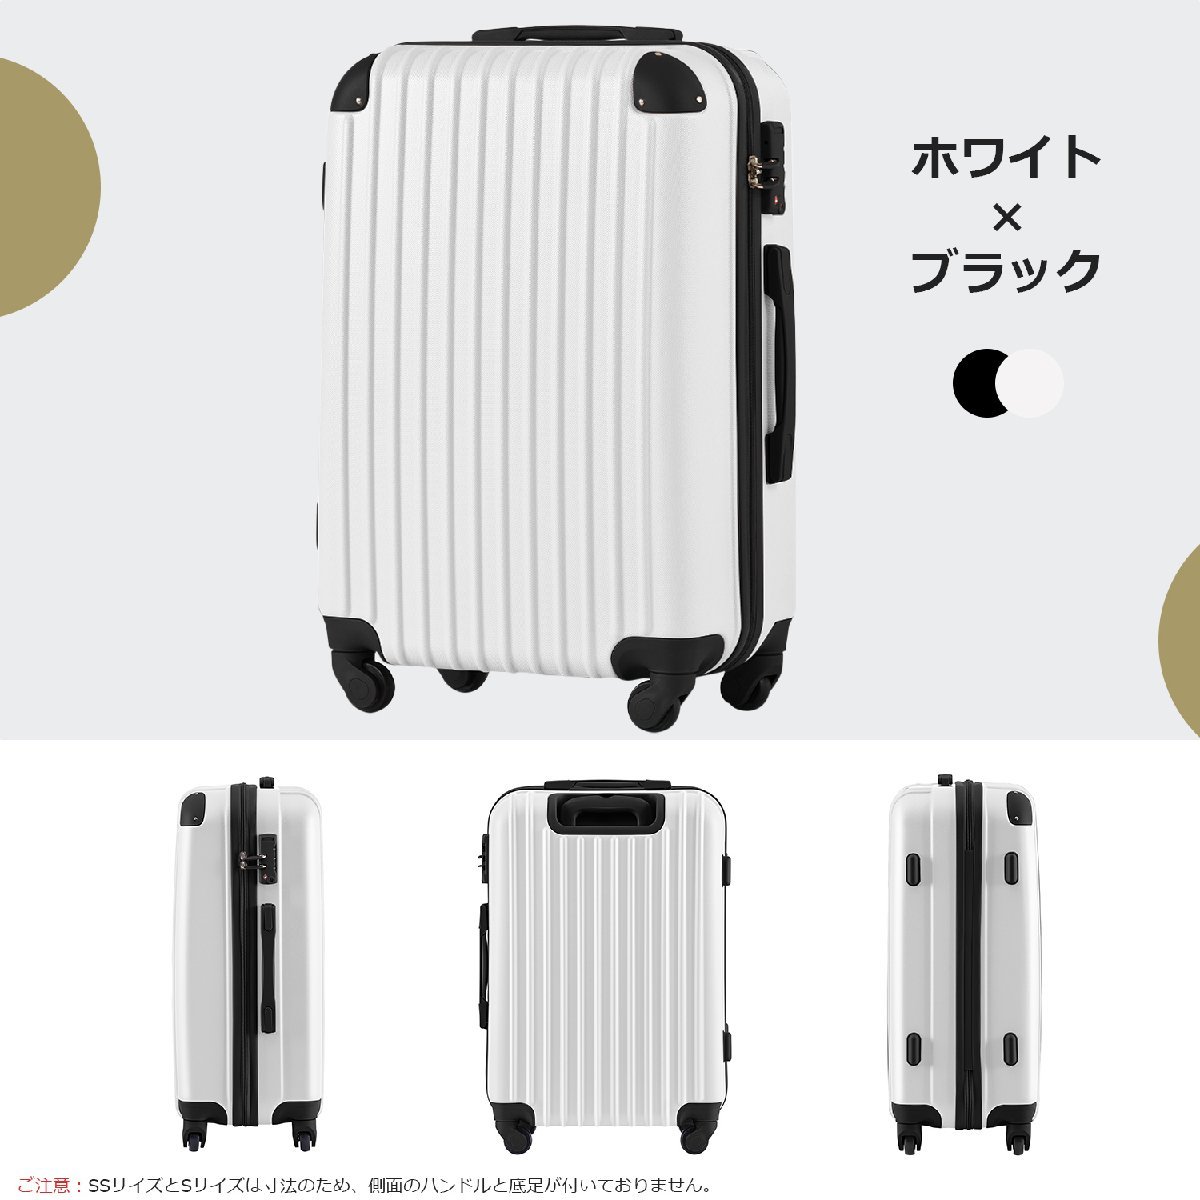 新着商品 新品未使用 Lサイズ スーツケース キャリーバッグ キャリー